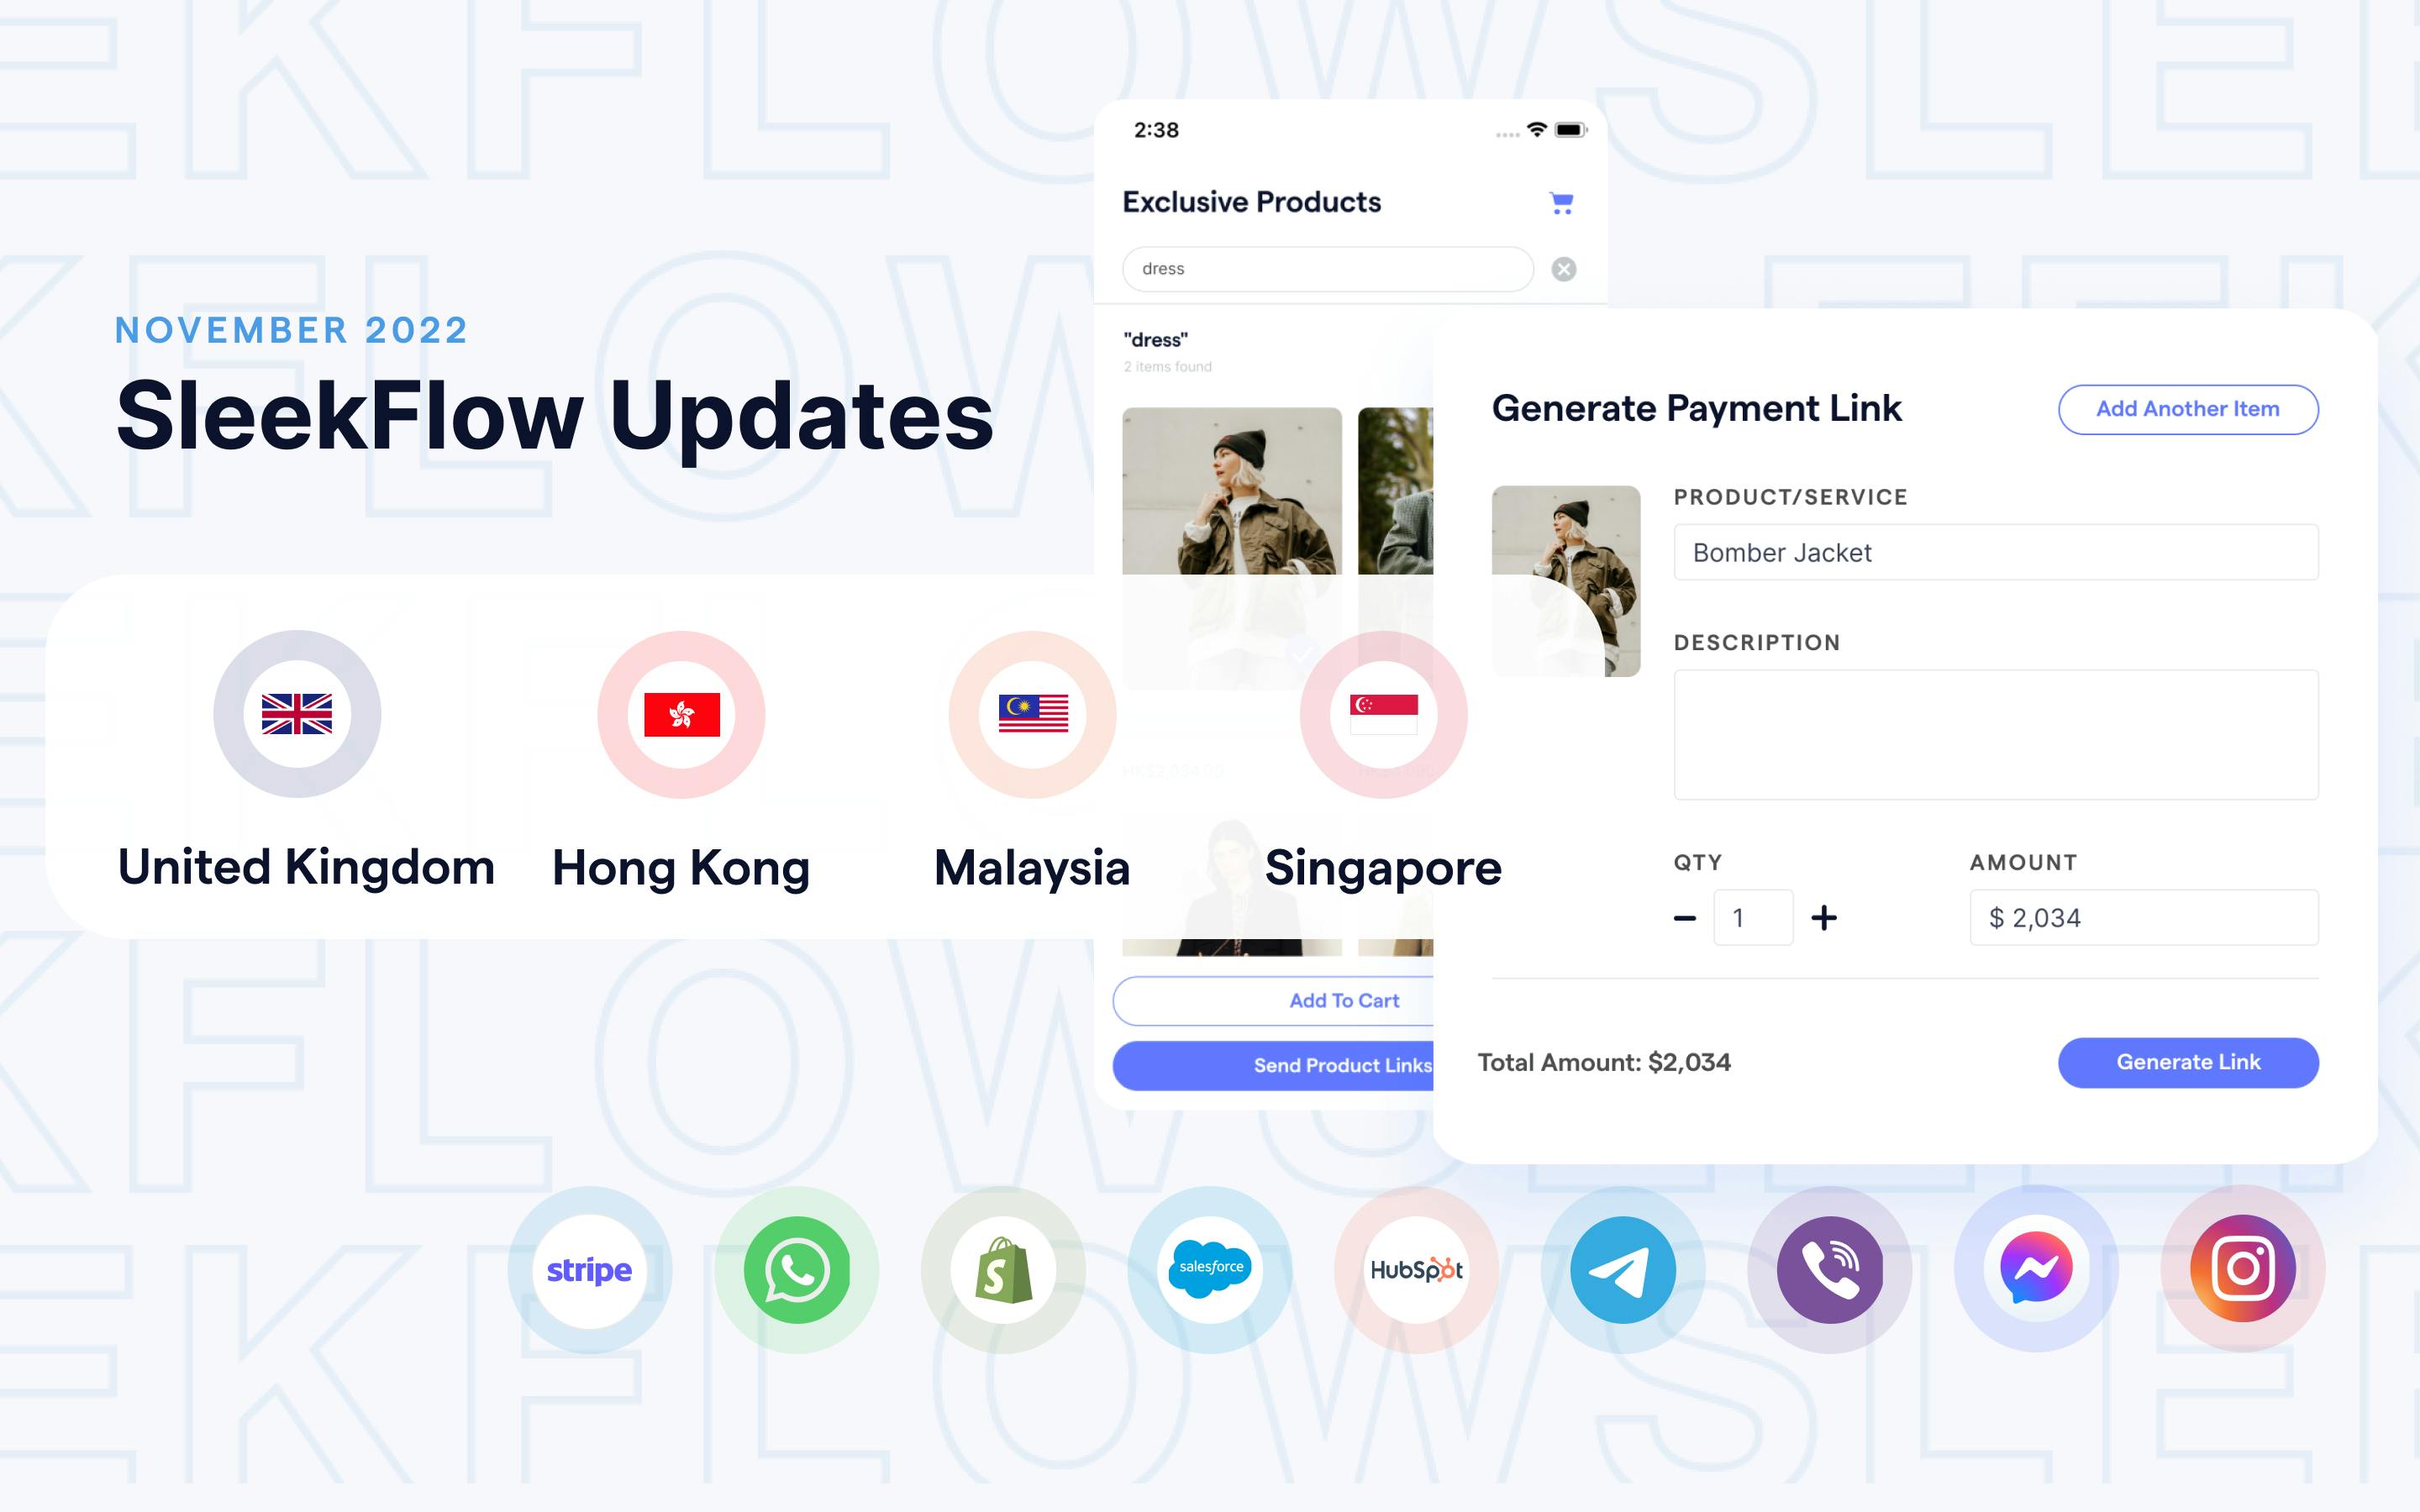 What's new in SleekFlow: 新加坡、马来西亚及英国商户现可使用收款连结功能